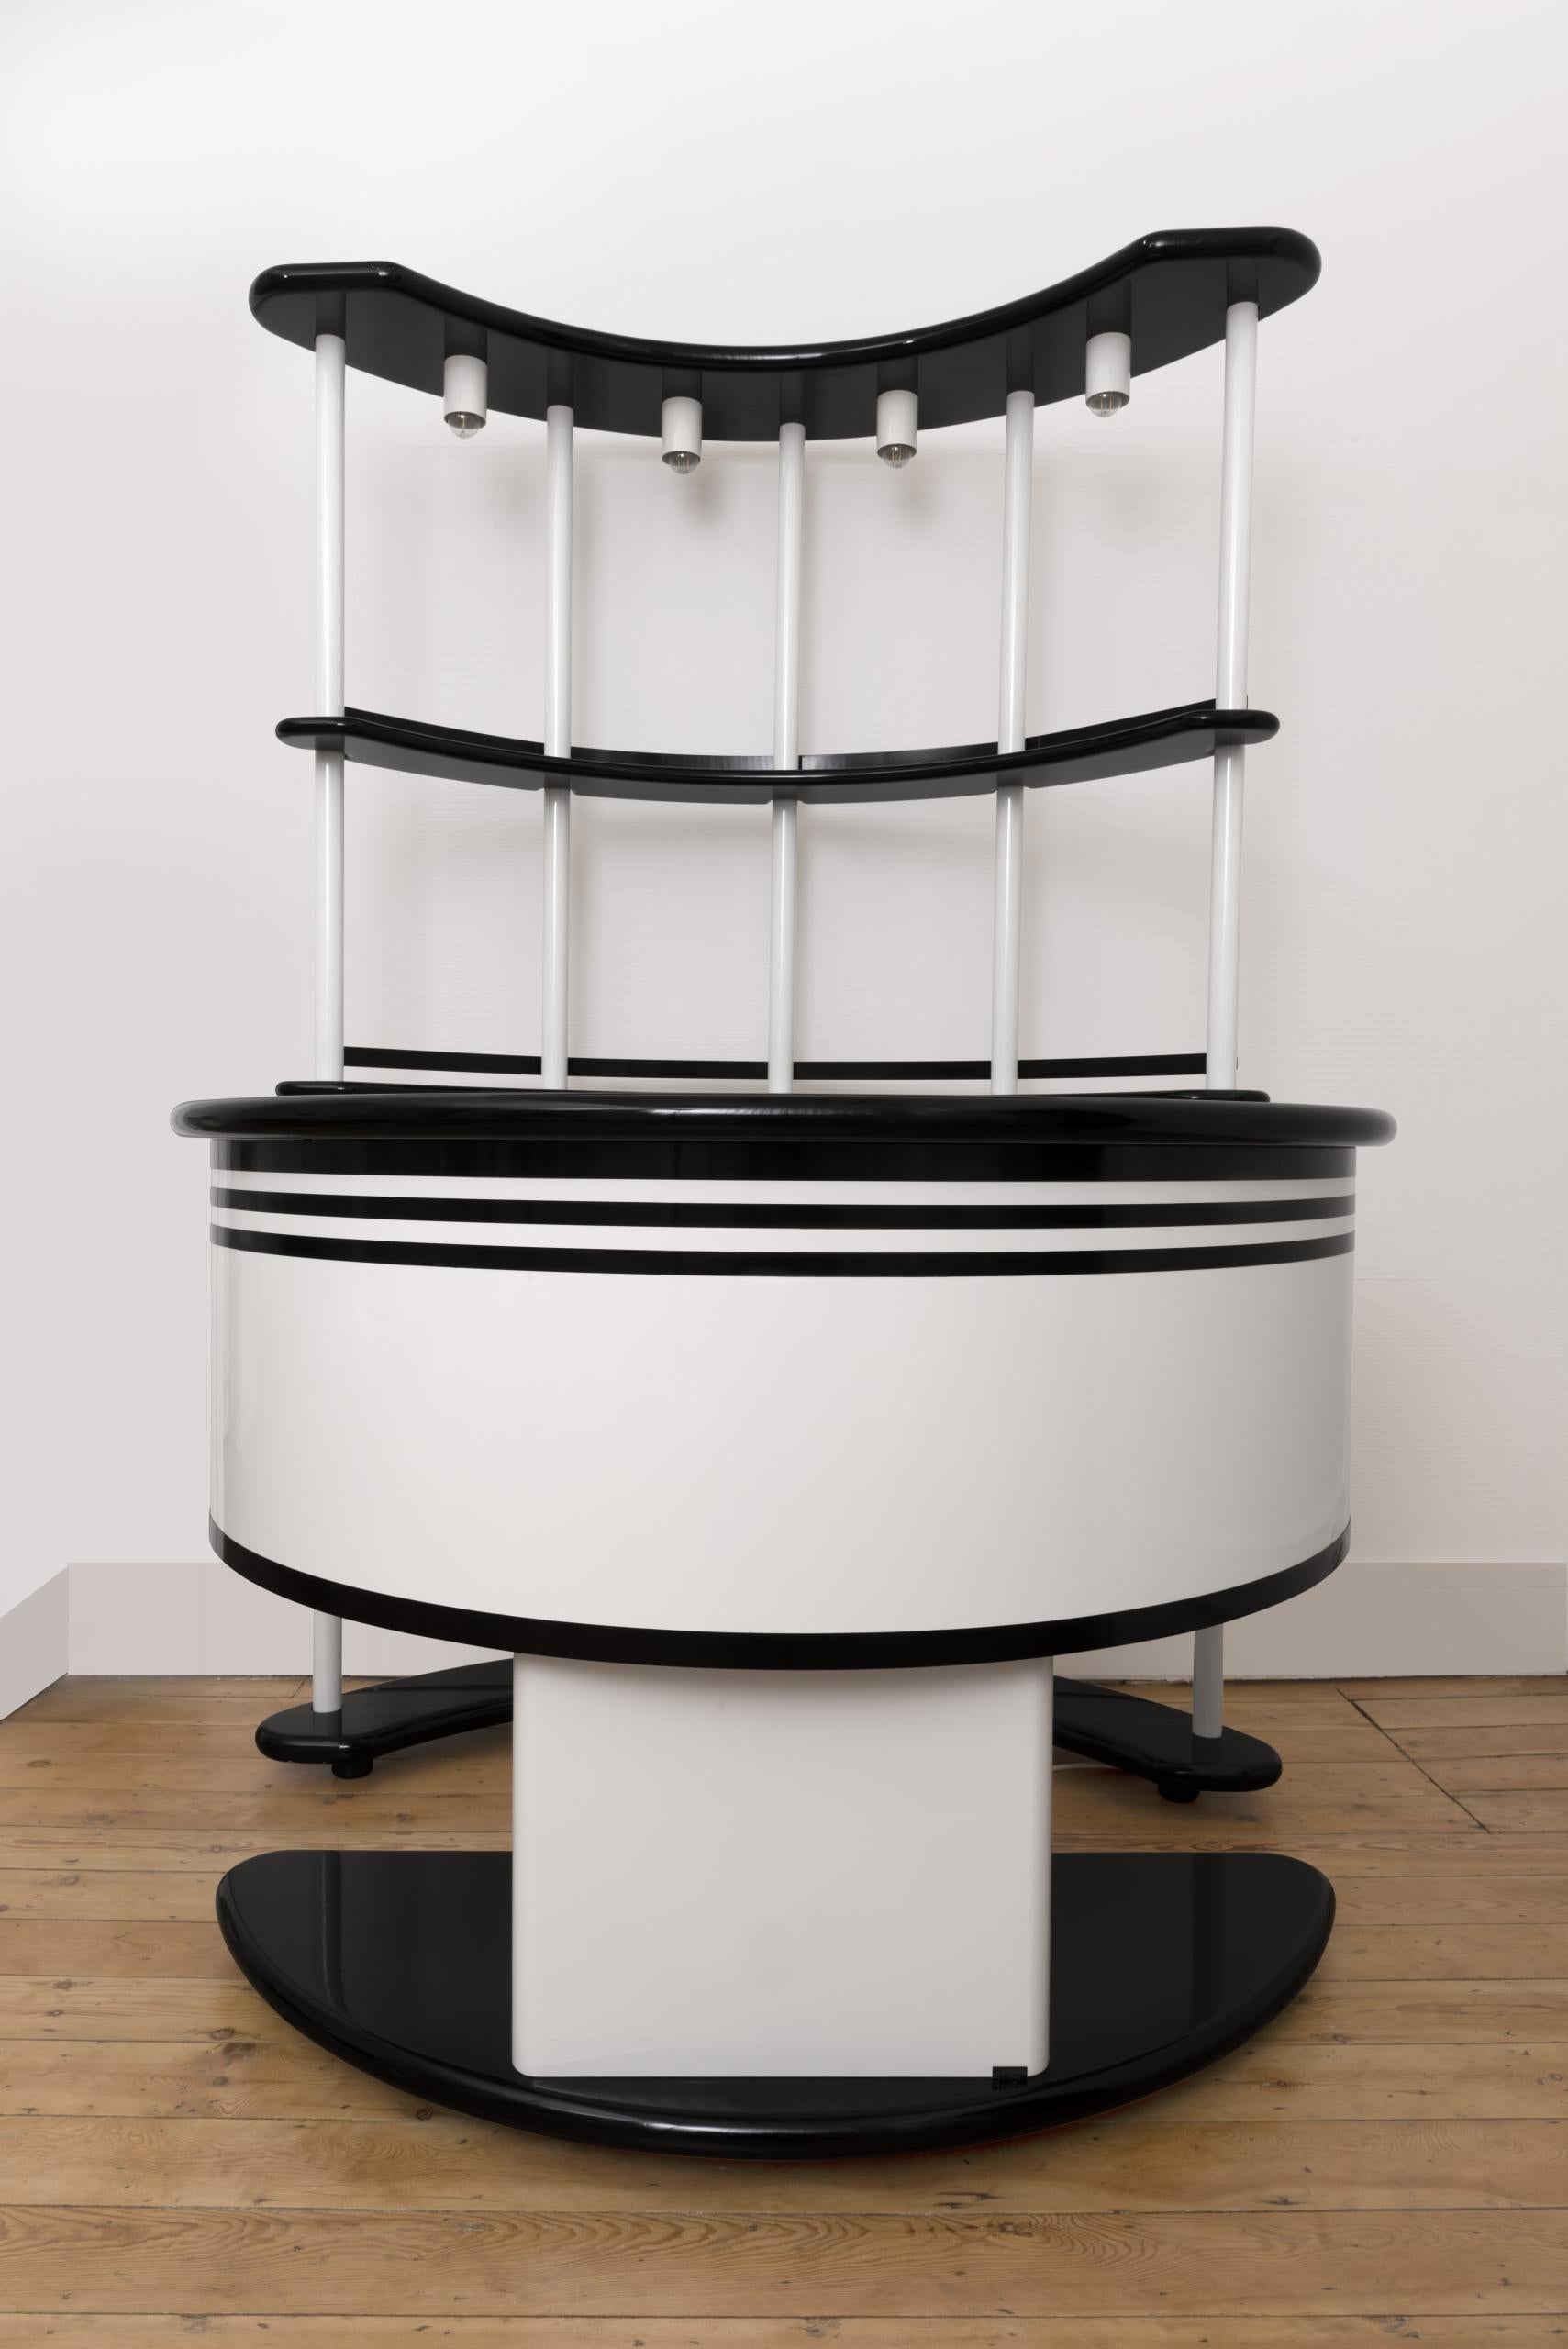 Bar moderne du milieu du siècle, modèle “Stilglass”, conçu par Guzzini pour Donati Latina, Italie, 1970.

Composé de trois pièces : un comptoir (avec un petit réfrigérateur), une console avec des étagères composées de cinq tubes blancs avec quatre